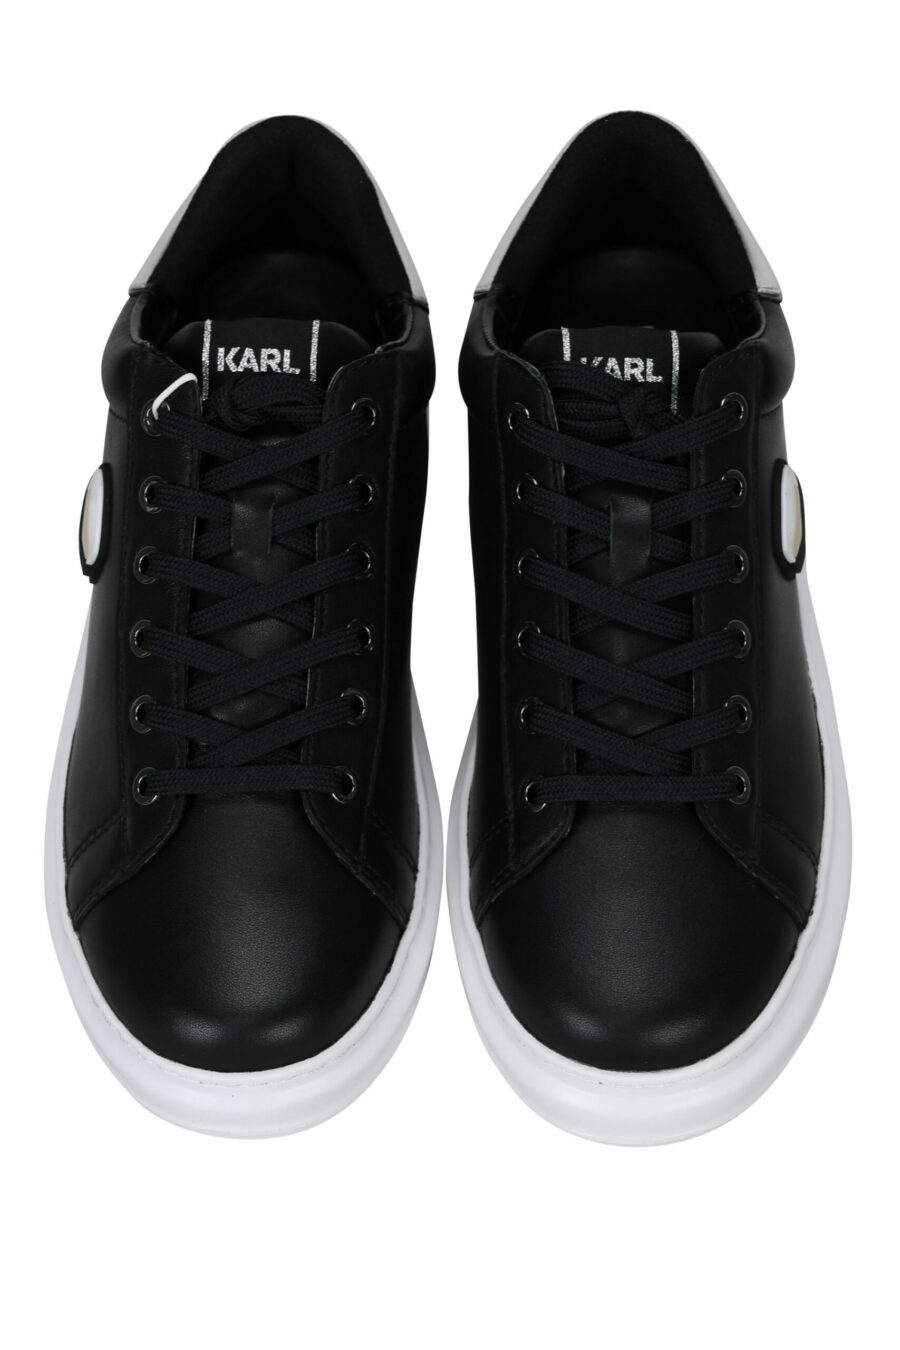 Zapatillas negras "Kapri" con logo en goma y detalle plateado - 5059529350979 4 scaled